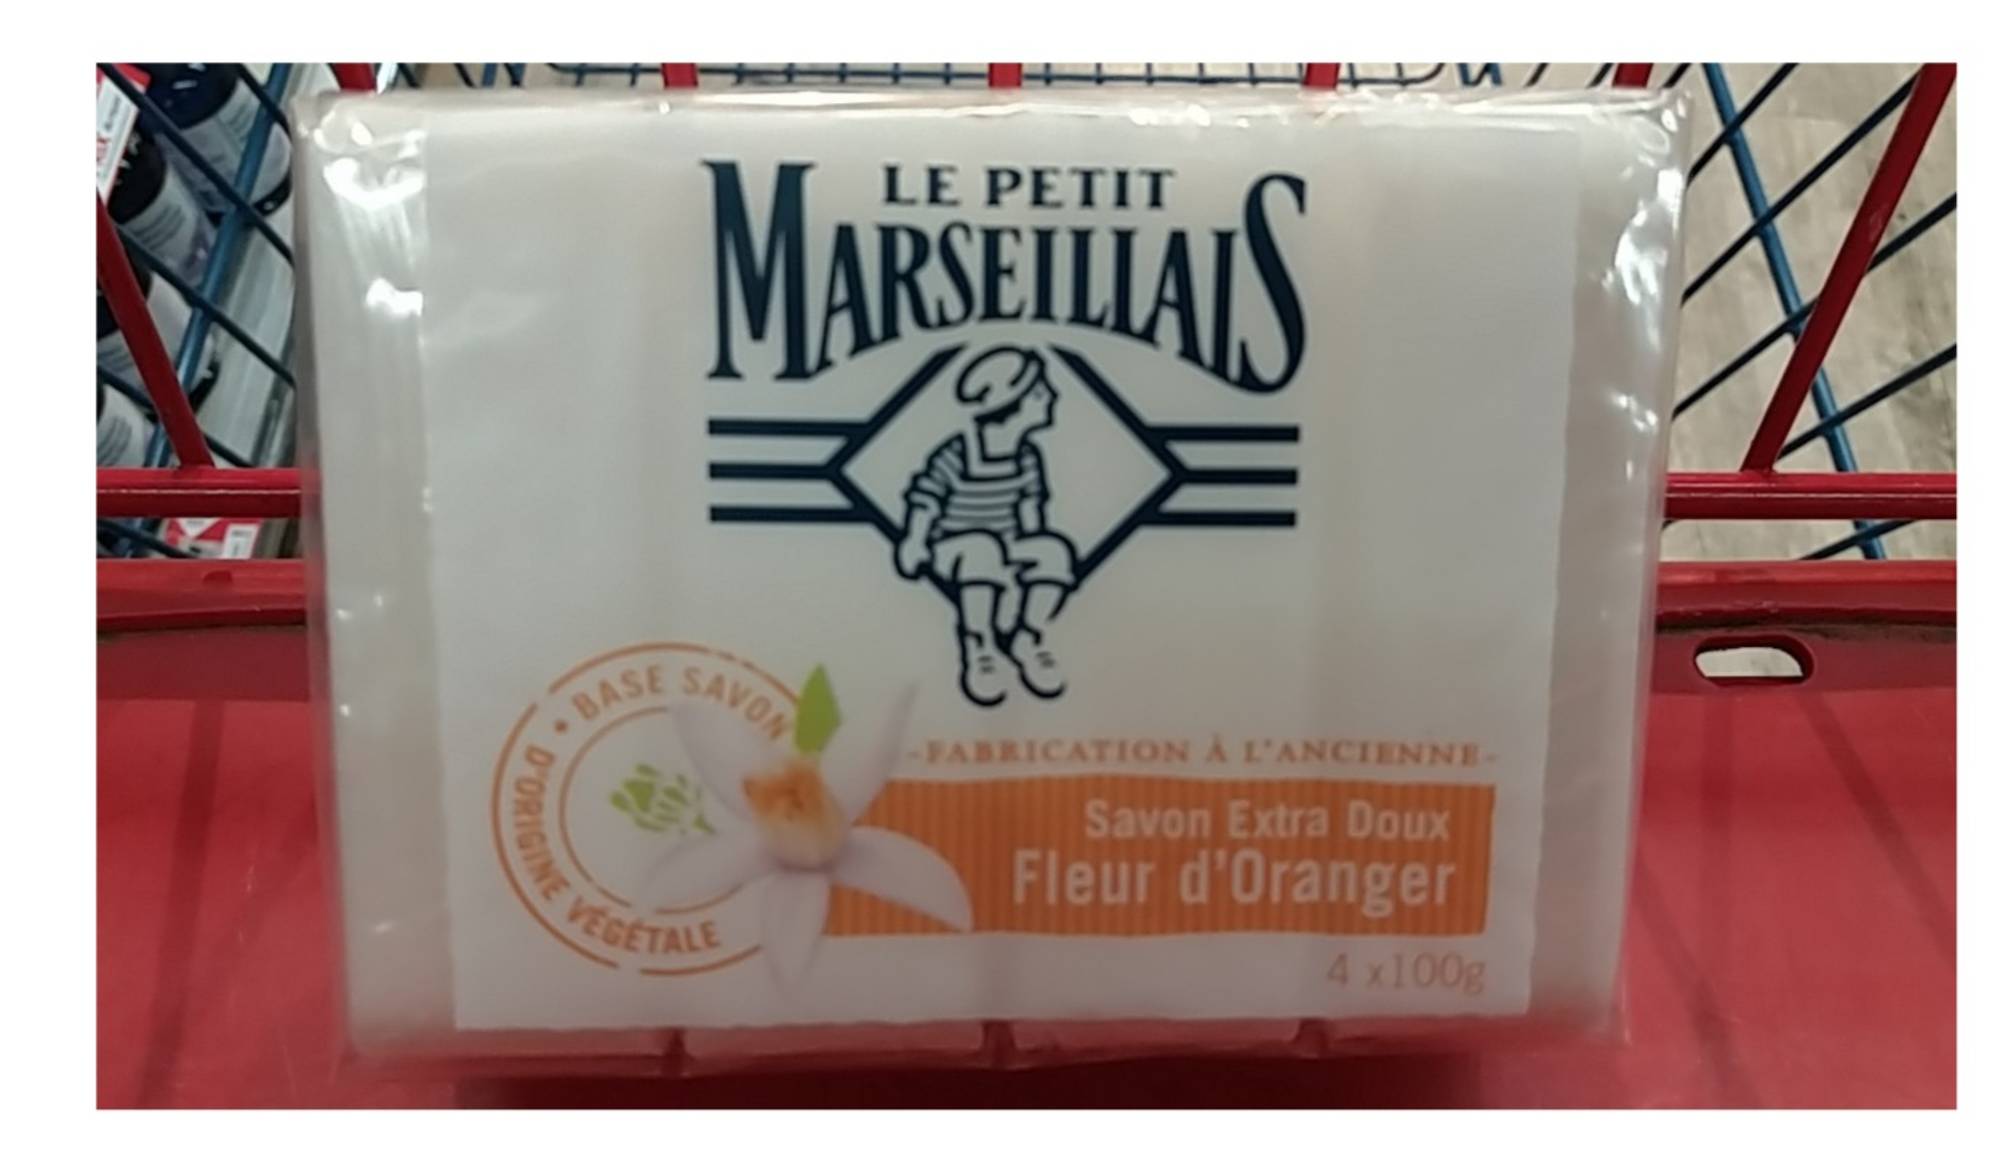 LE PETIT MARSEILLAIS - Savon extra doux fleur d'oranger